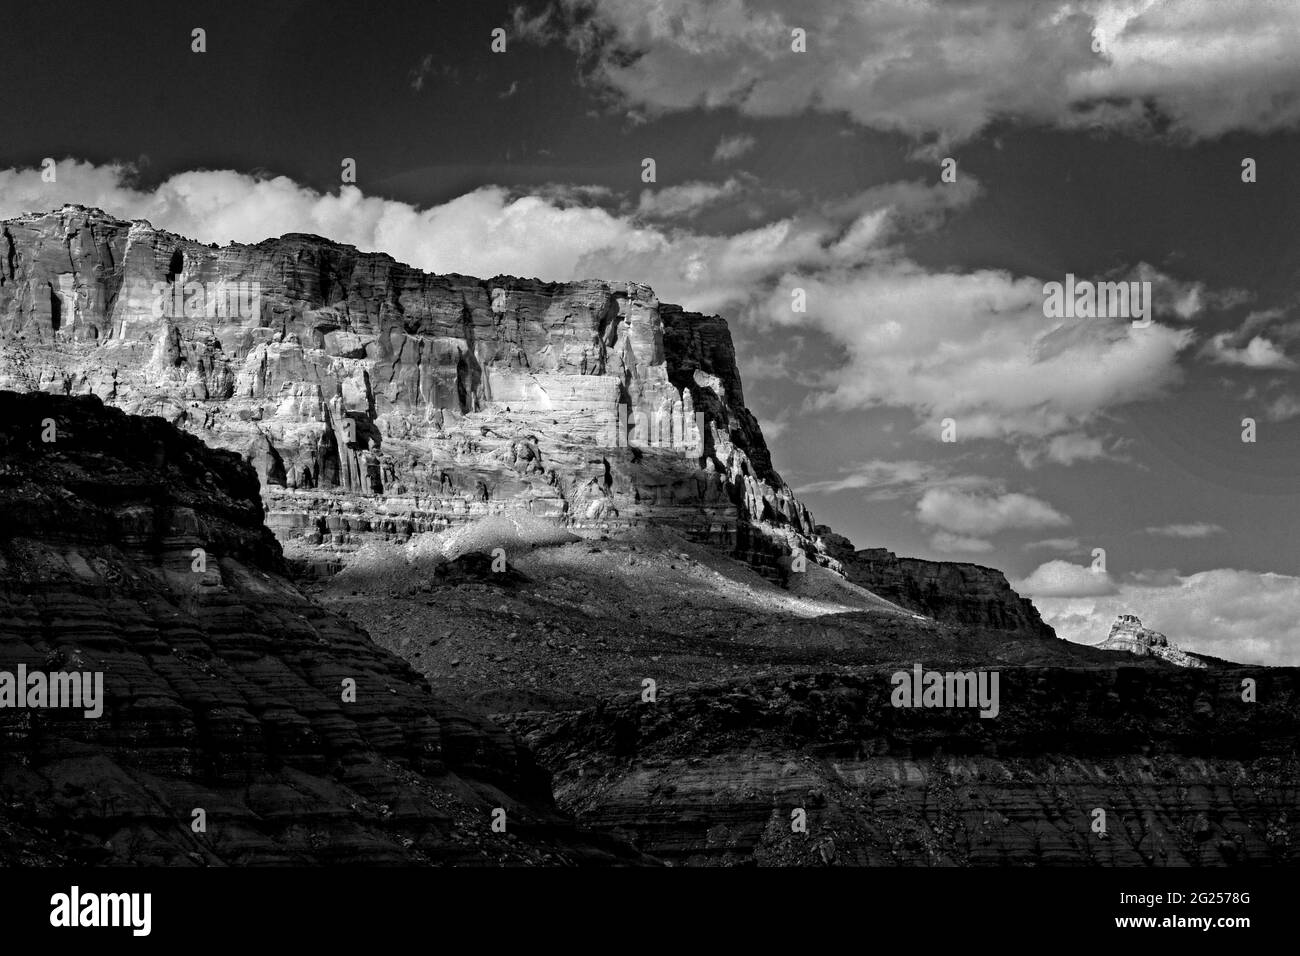 Klares, sauberes Schwarz-Weiß-Bild von Wolken, einem Canyon, einer steilen Felswand und einer flachen mesa. Scharfe Kontraste zwischen Schwarz und Weiß. Schönes Bild Stockfoto